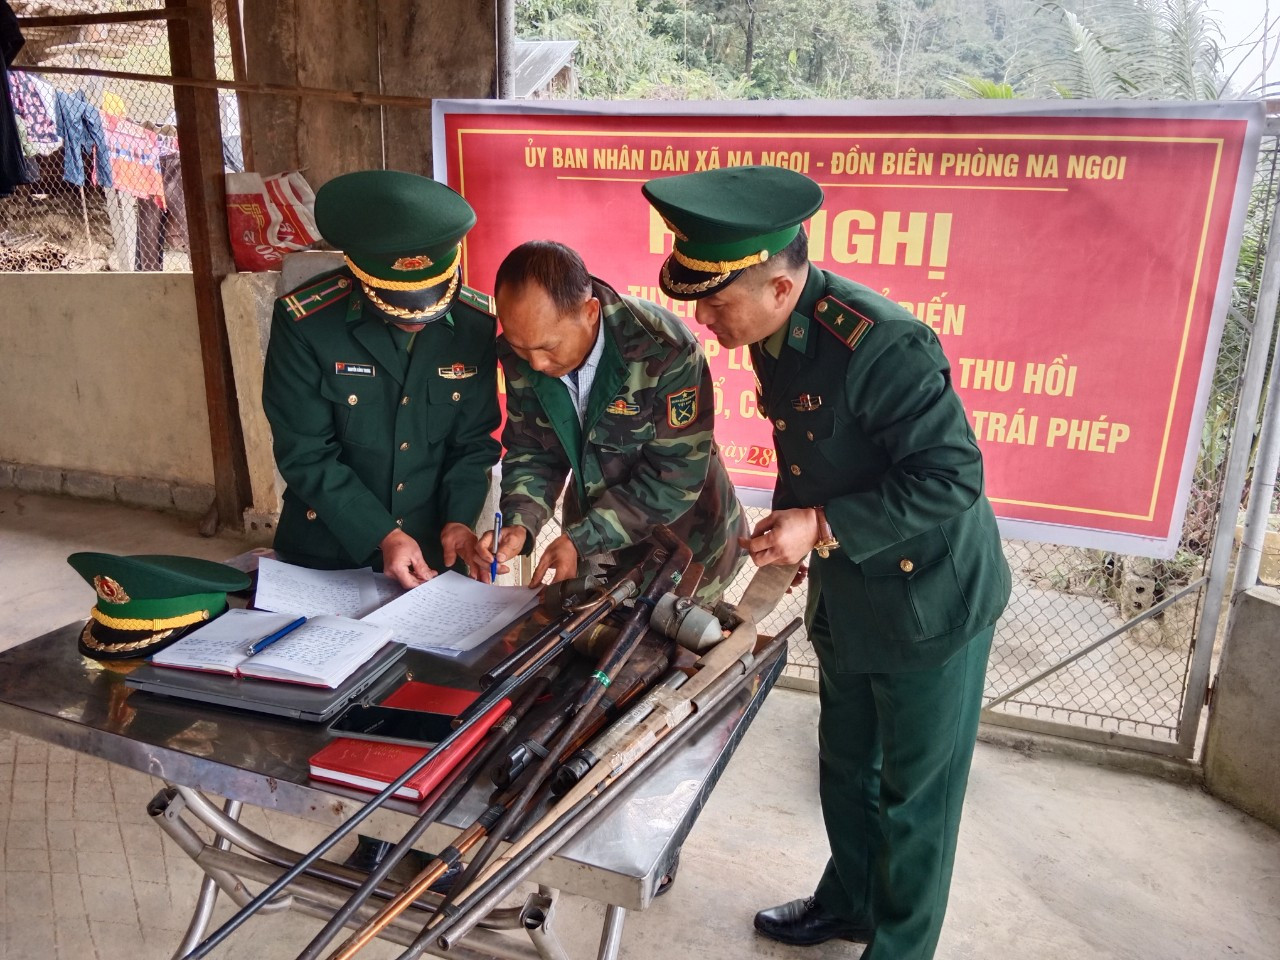 bna_Cán bộ Đồn Biên phòng Na Ngoi, BĐBP Nghệ An tiếp nhận vũ khí do người dân địa phương giao nộp. ảnh pv.jpg